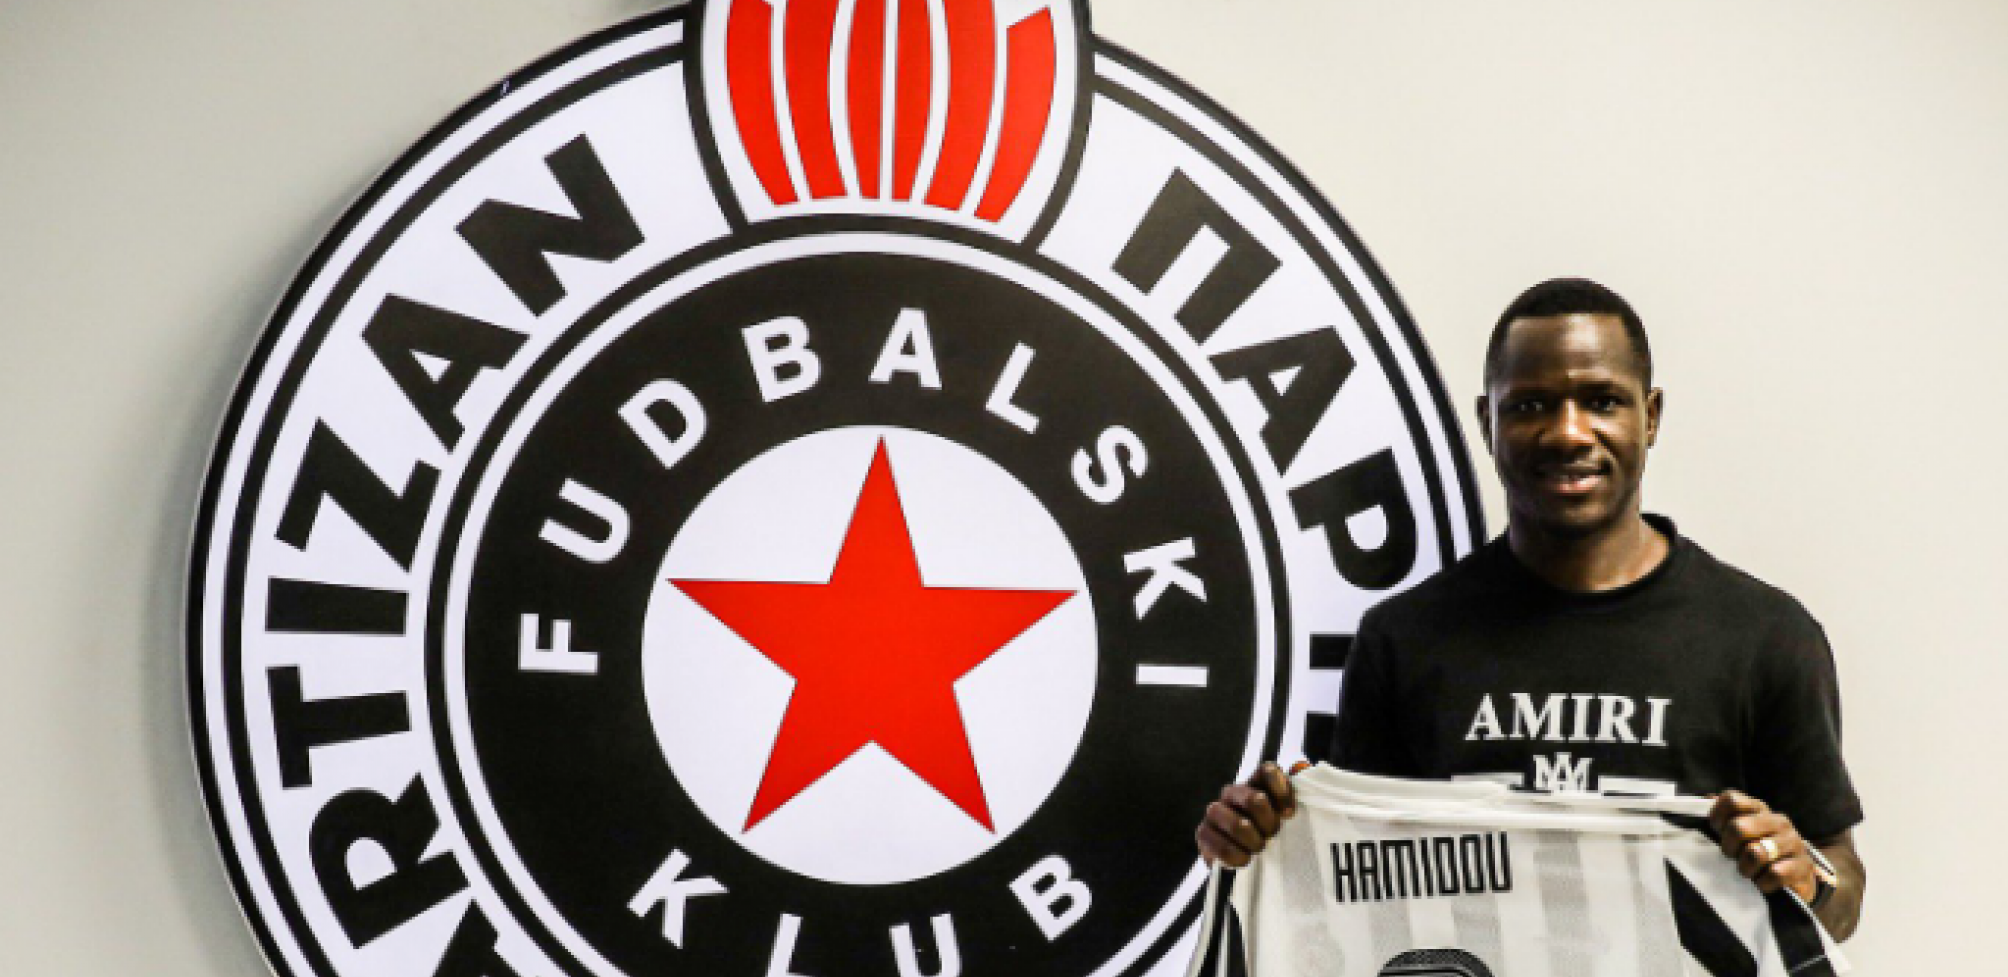 GOTOVO Partizan doveo veliko pojačanje, Traore potpisao